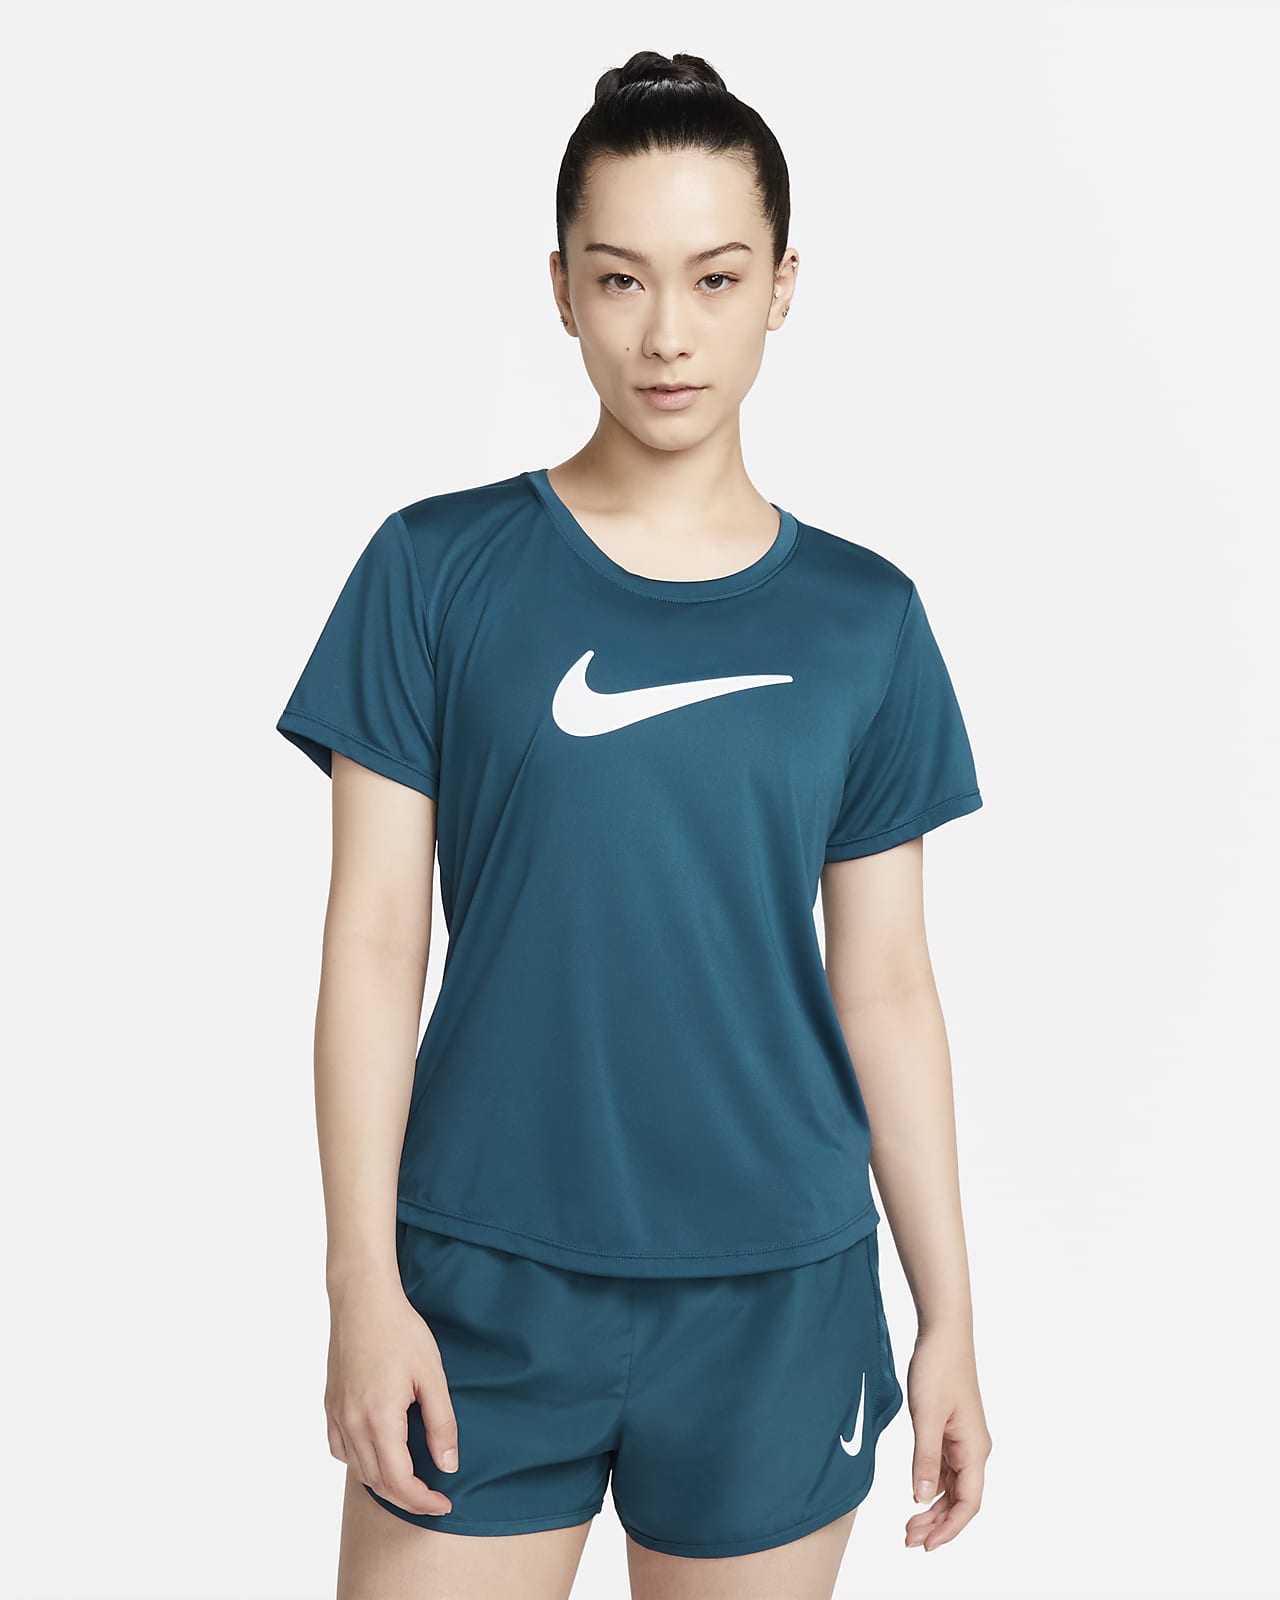 เสื้อวิ่งผู้หญิง Nike